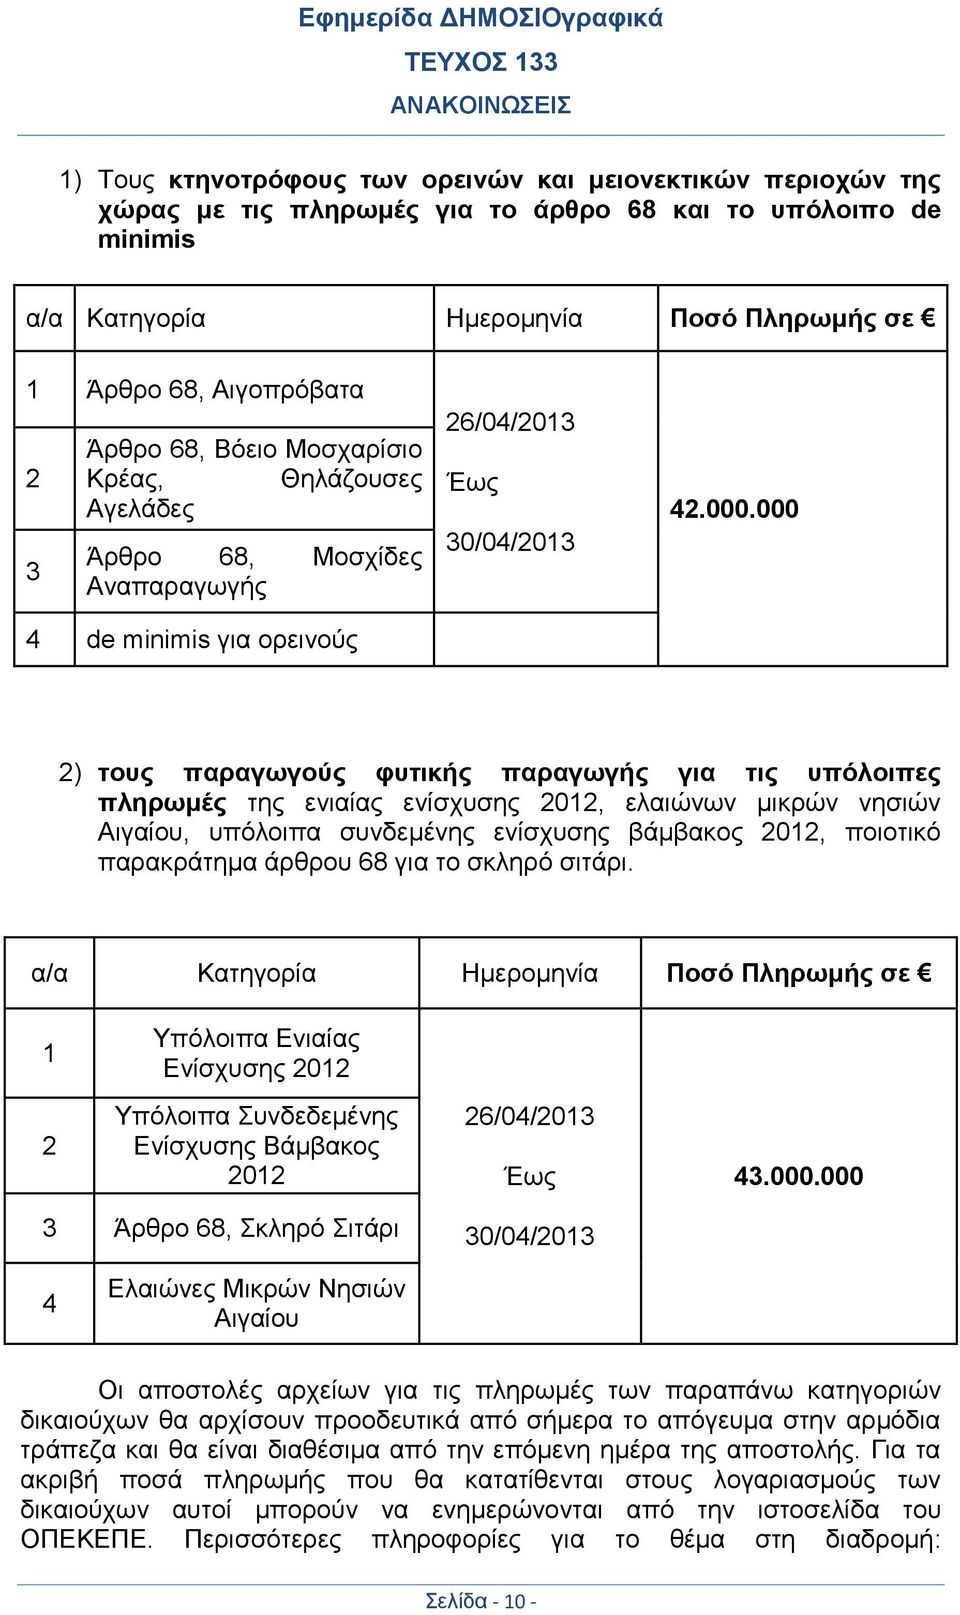 000 2) τους παραγωγούς φυτικής παραγωγής για τις υπόλοιπες πληρωμές της ενιαίας ενίσχυσης 2012, ελαιώνων μικρών νησιών Αιγαίου, υπόλοιπα συνδεμένης ενίσχυσης βάμβακος 2012, ποιοτικό παρακράτημα